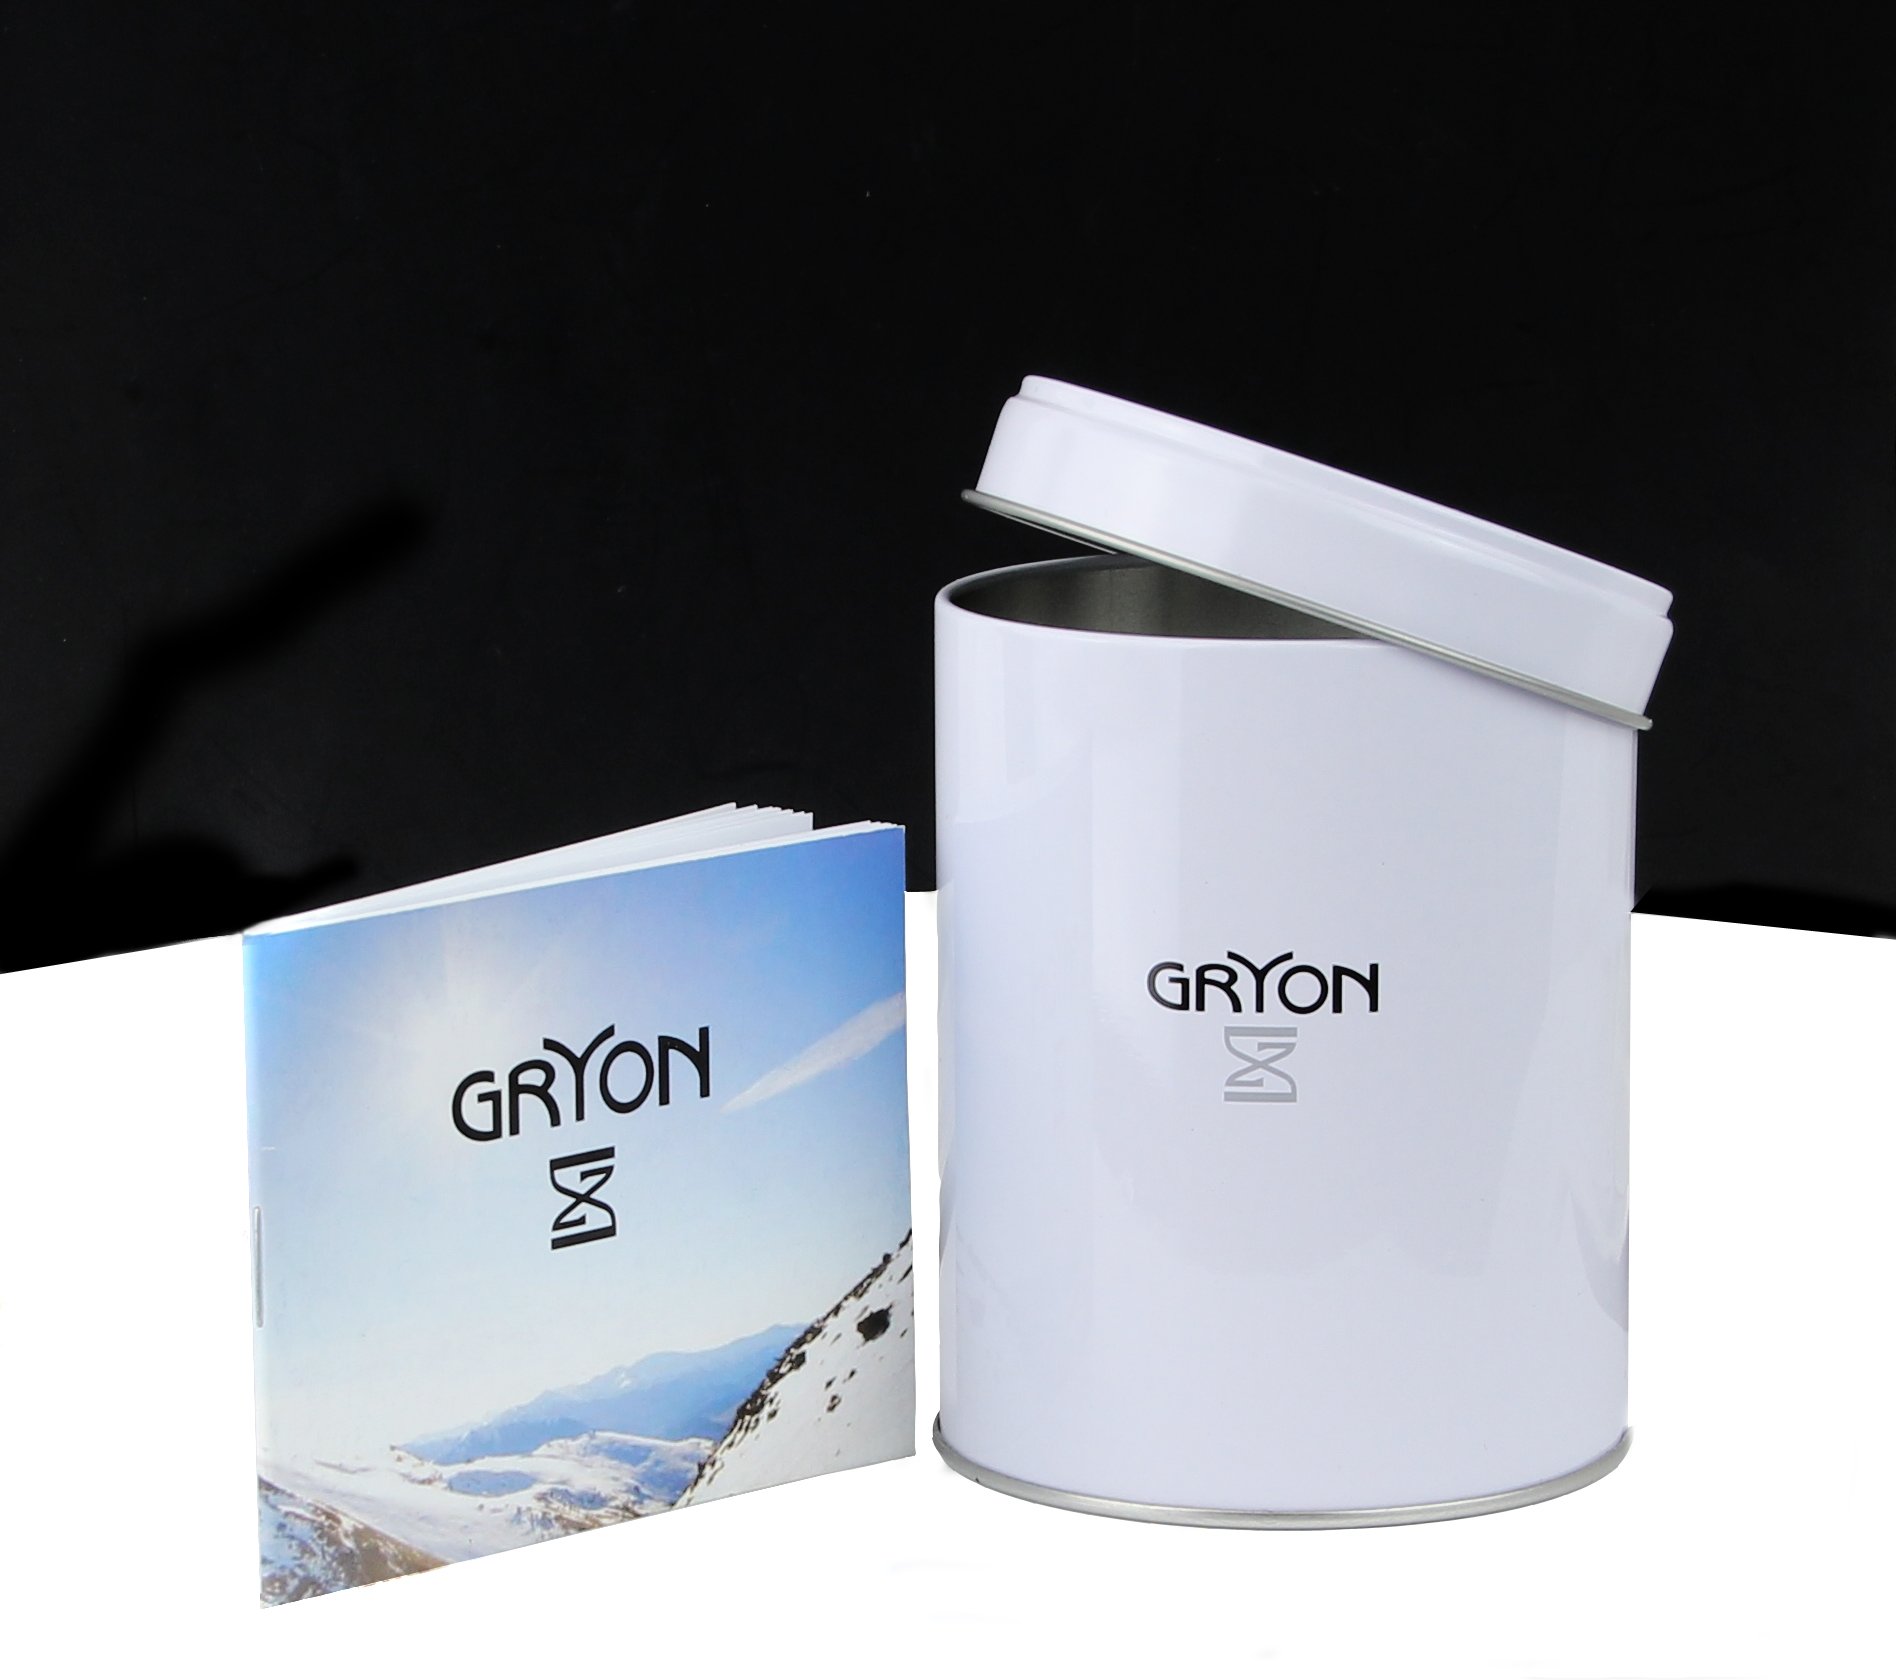 Фото часов Женские часы Gryon Classic G 641.23.33